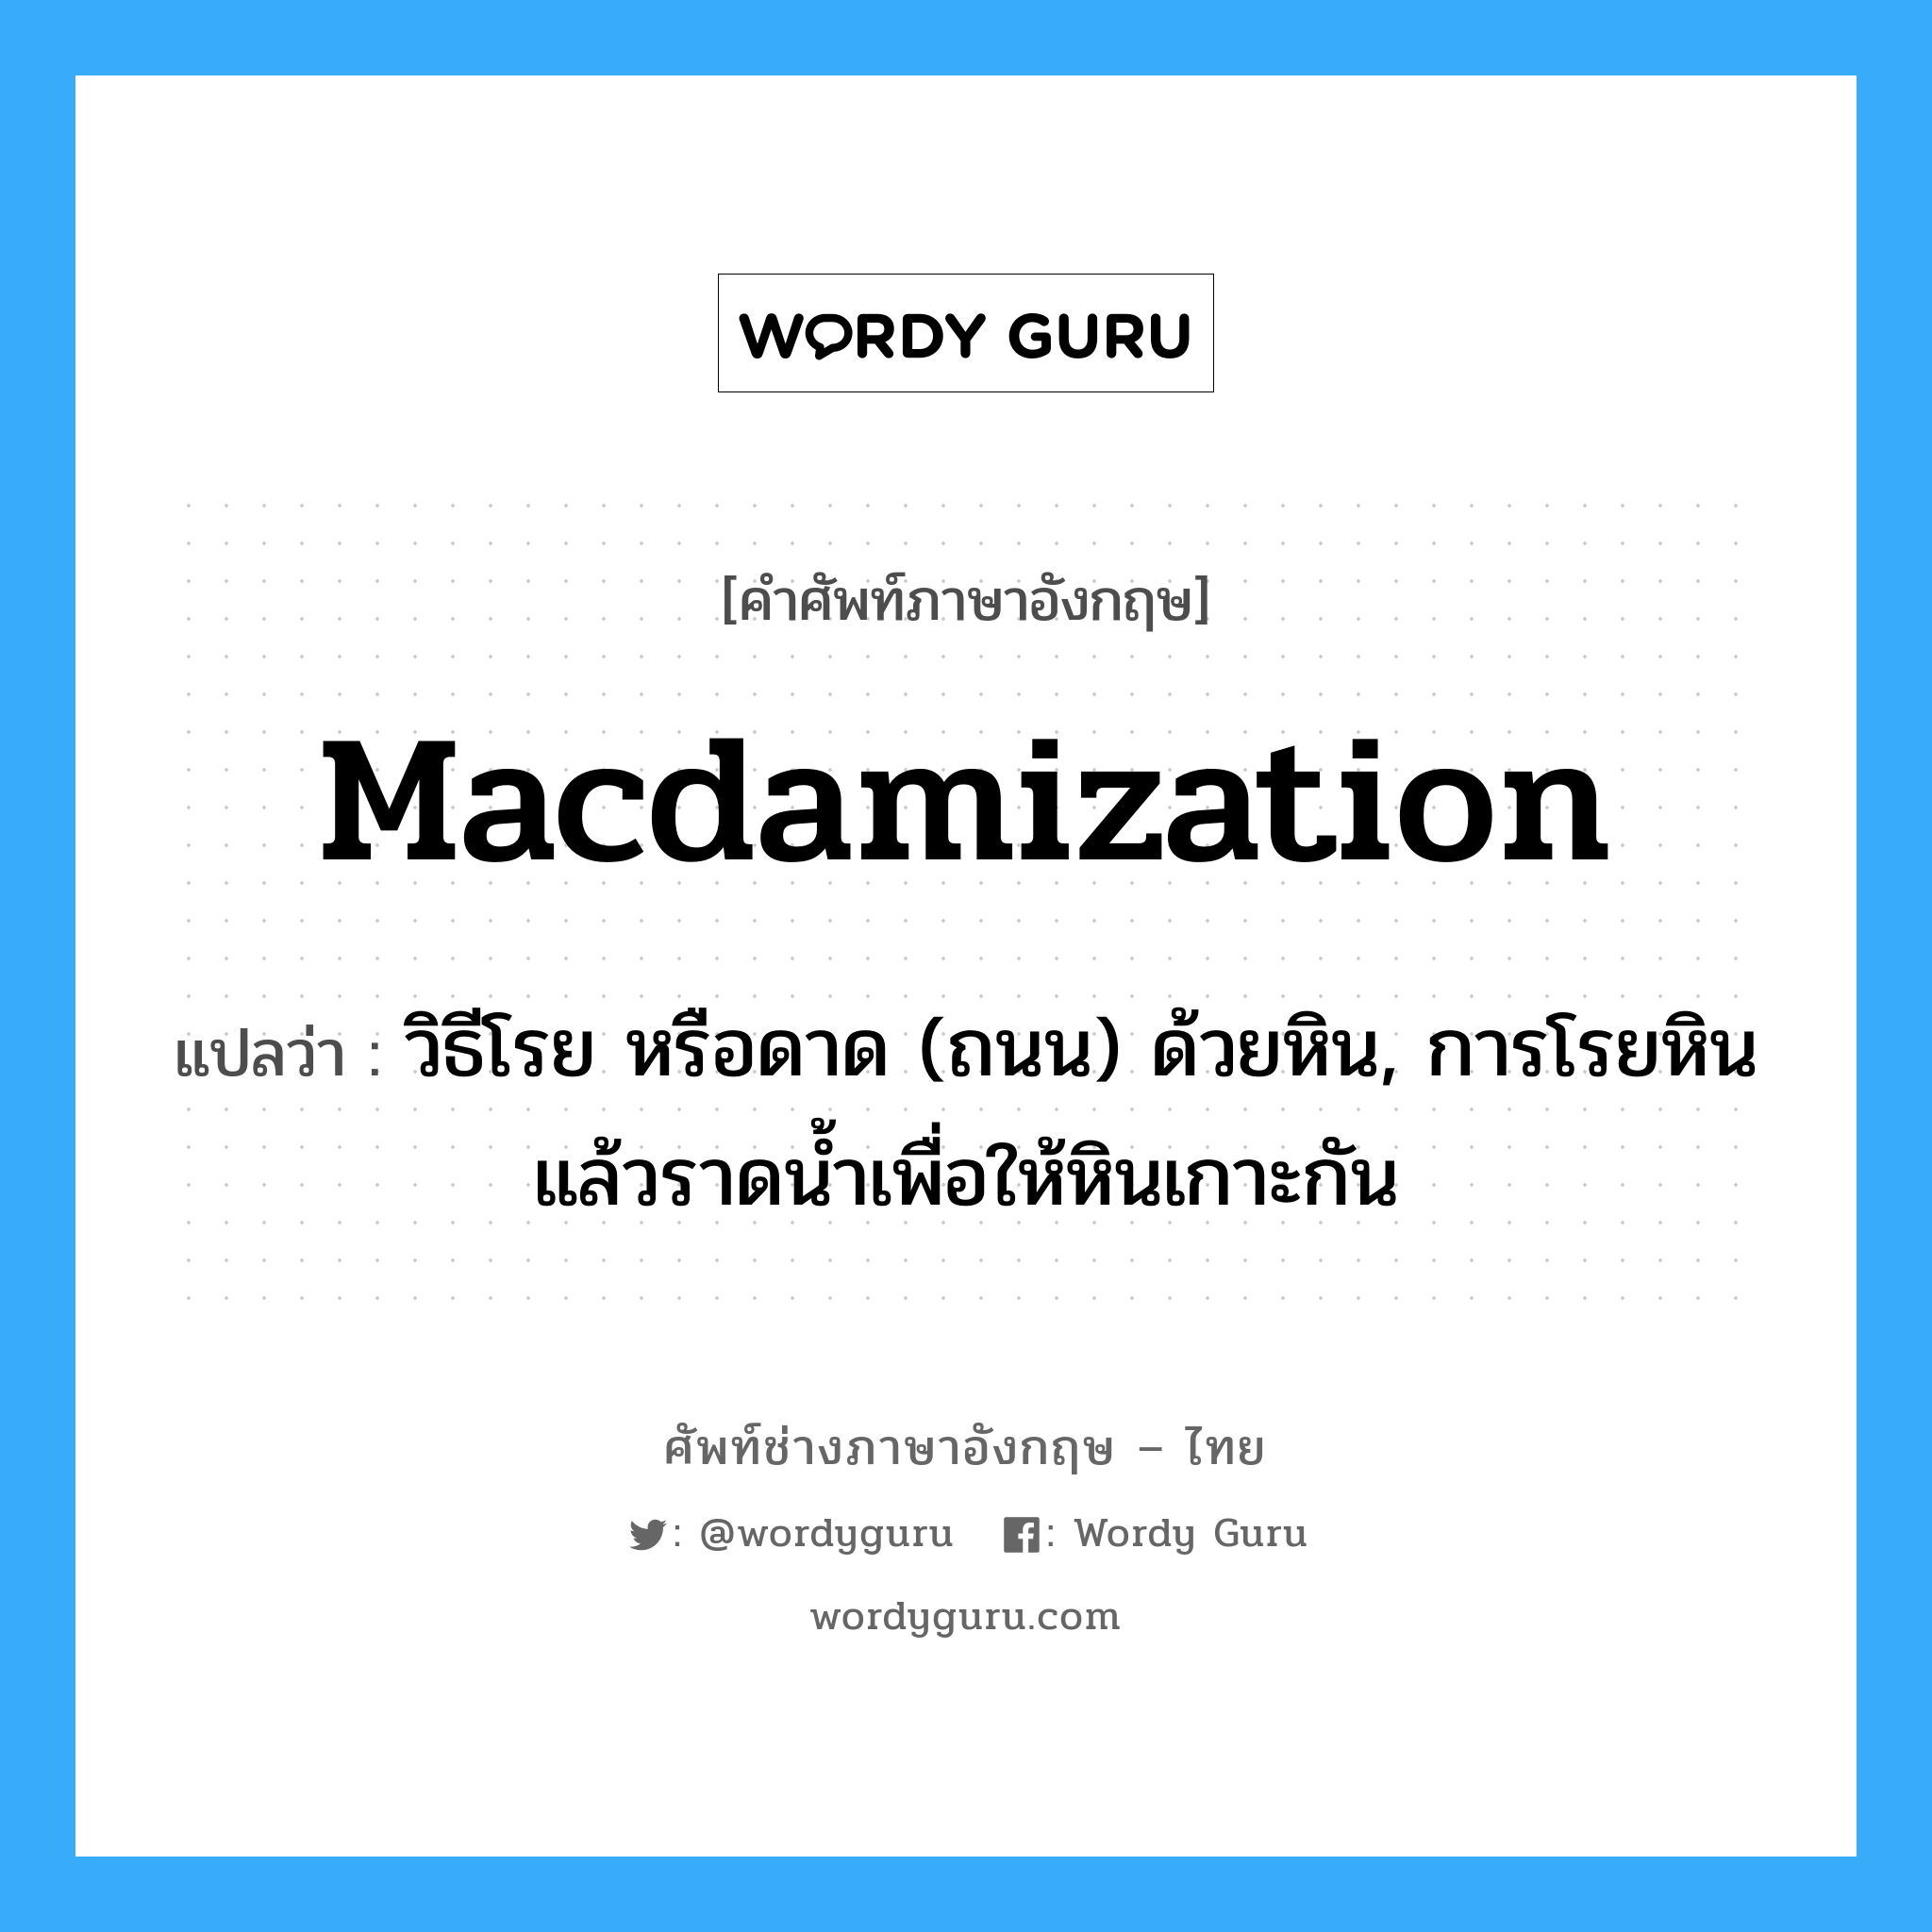 macdamization แปลว่า?, คำศัพท์ช่างภาษาอังกฤษ - ไทย macdamization คำศัพท์ภาษาอังกฤษ macdamization แปลว่า วิธีโรย หรือดาด (ถนน) ด้วยหิน, การโรยหินแล้วราดน้ำเพื่อให้หินเกาะกัน